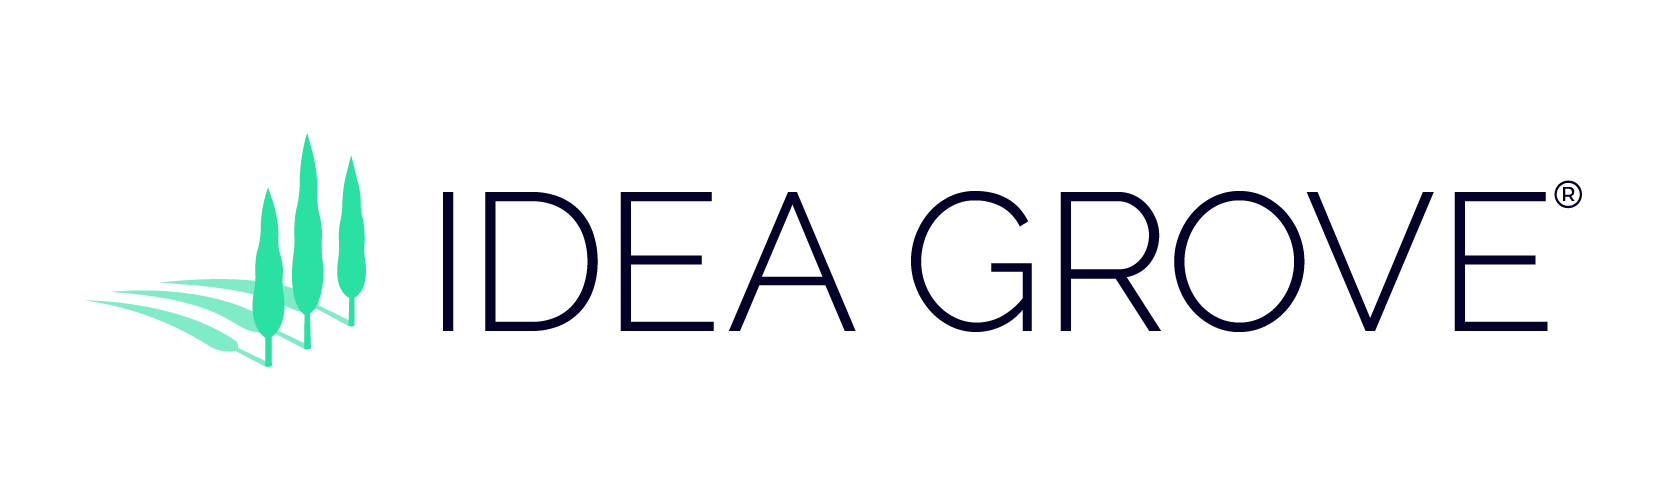 Idea Grove logo